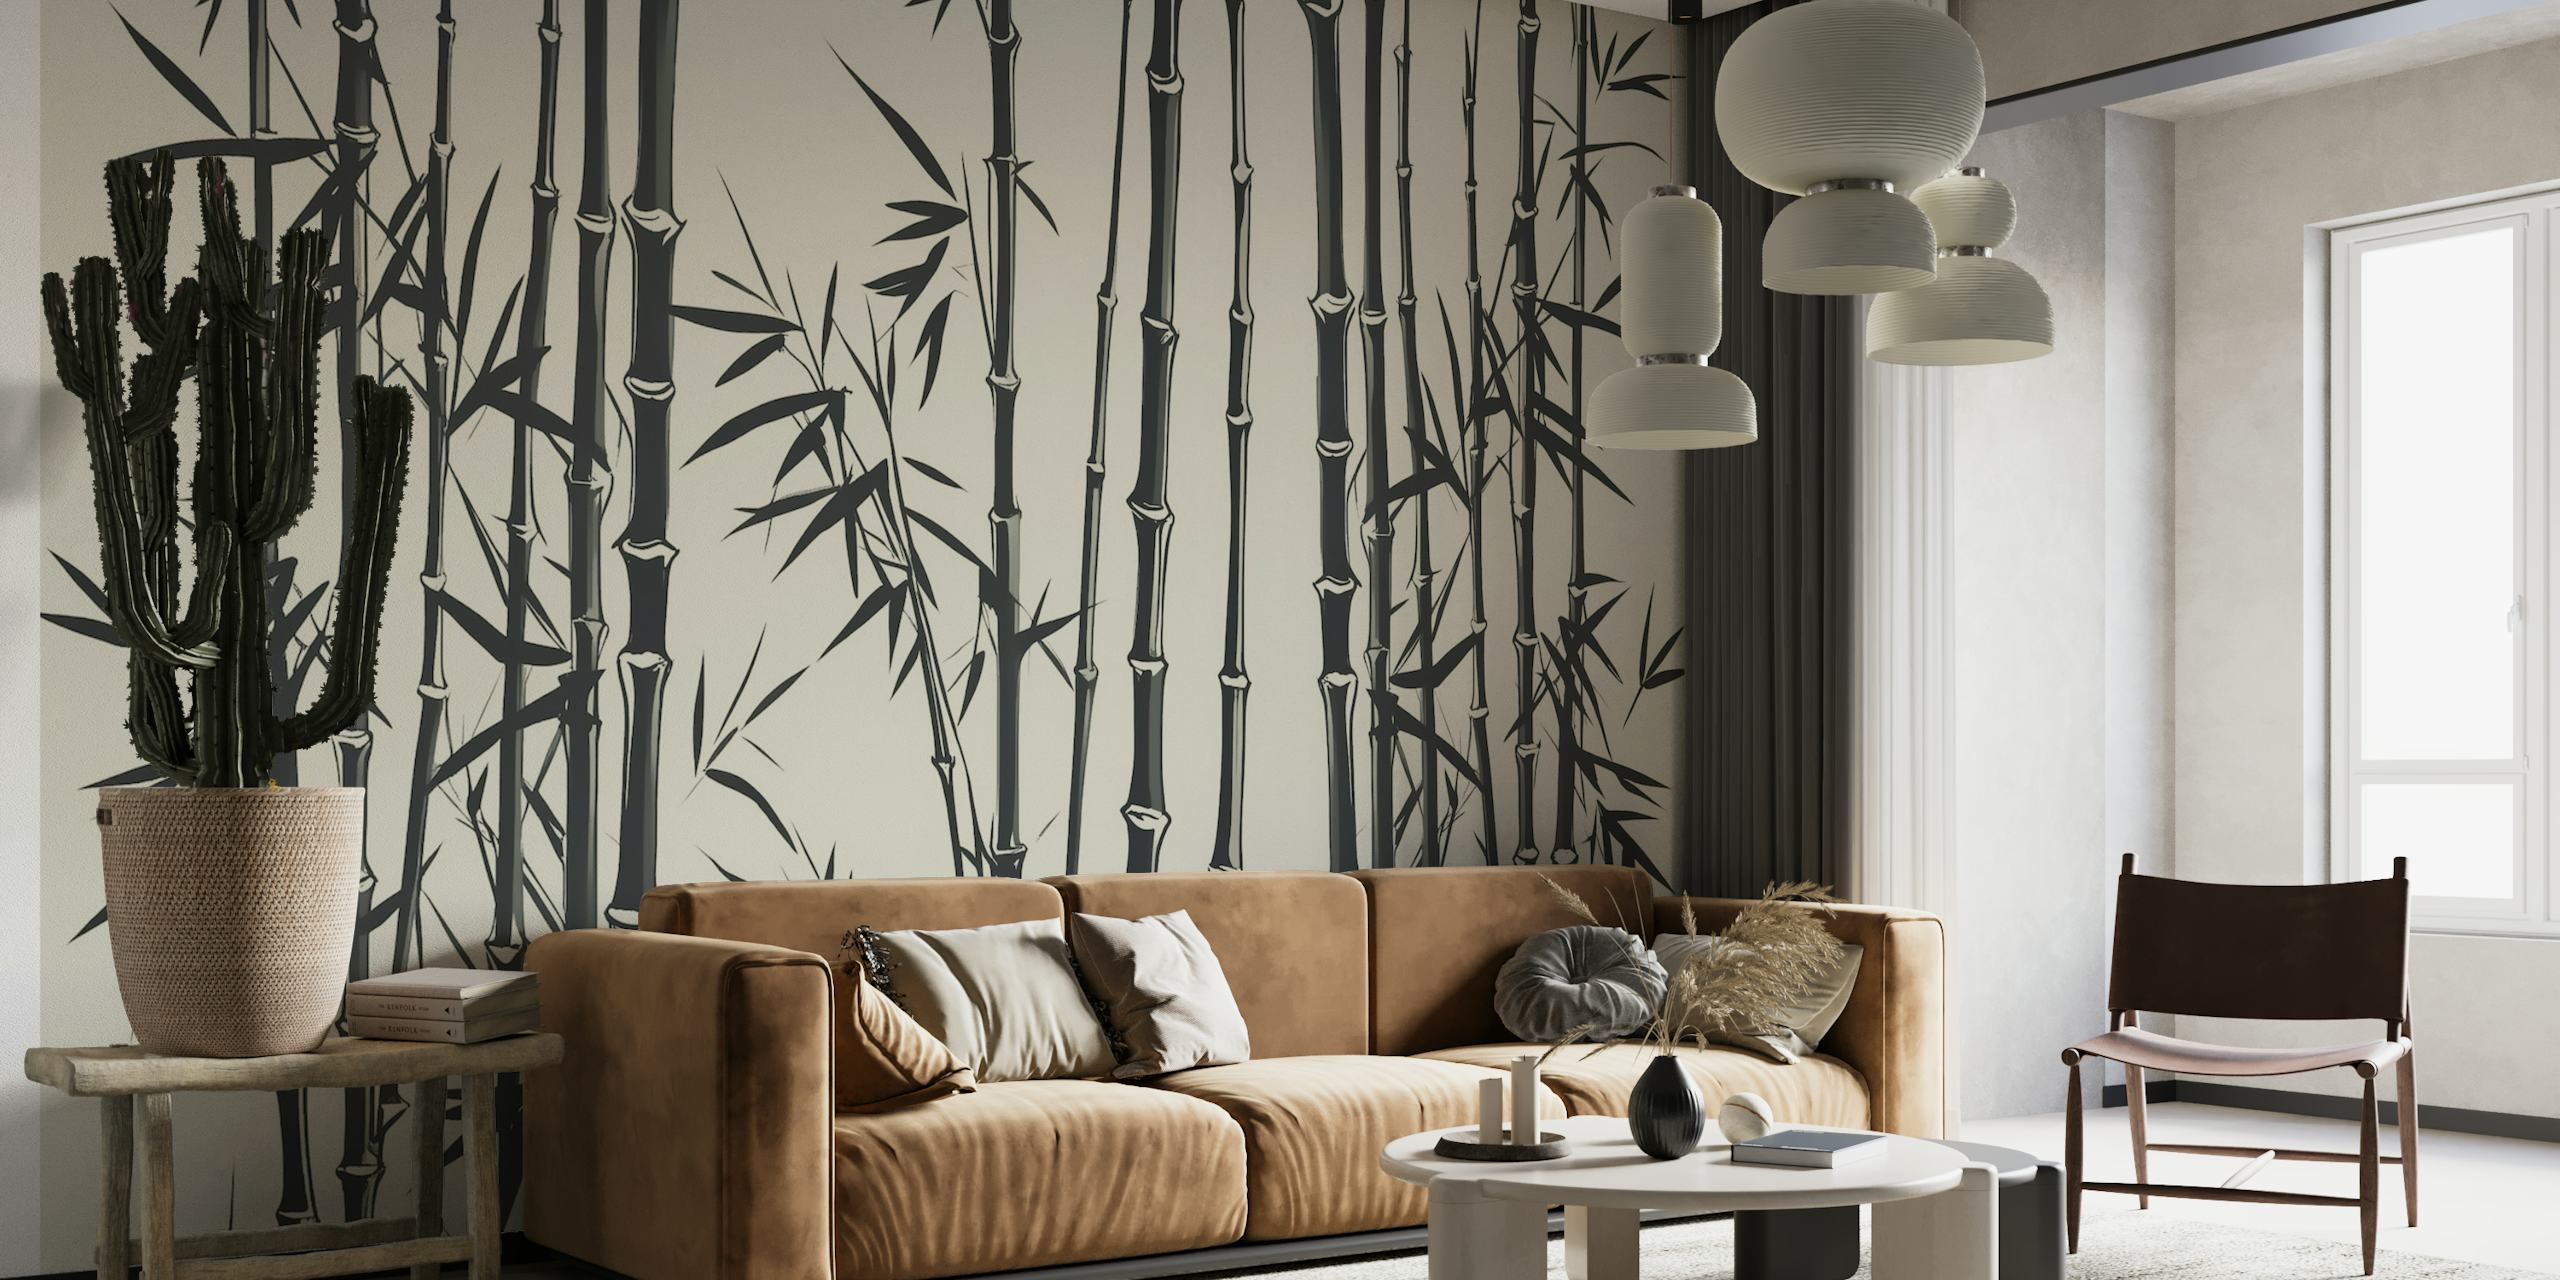 Fototapet av bambugräs i art déco-stil i svart och vitt på en cremebakgrund